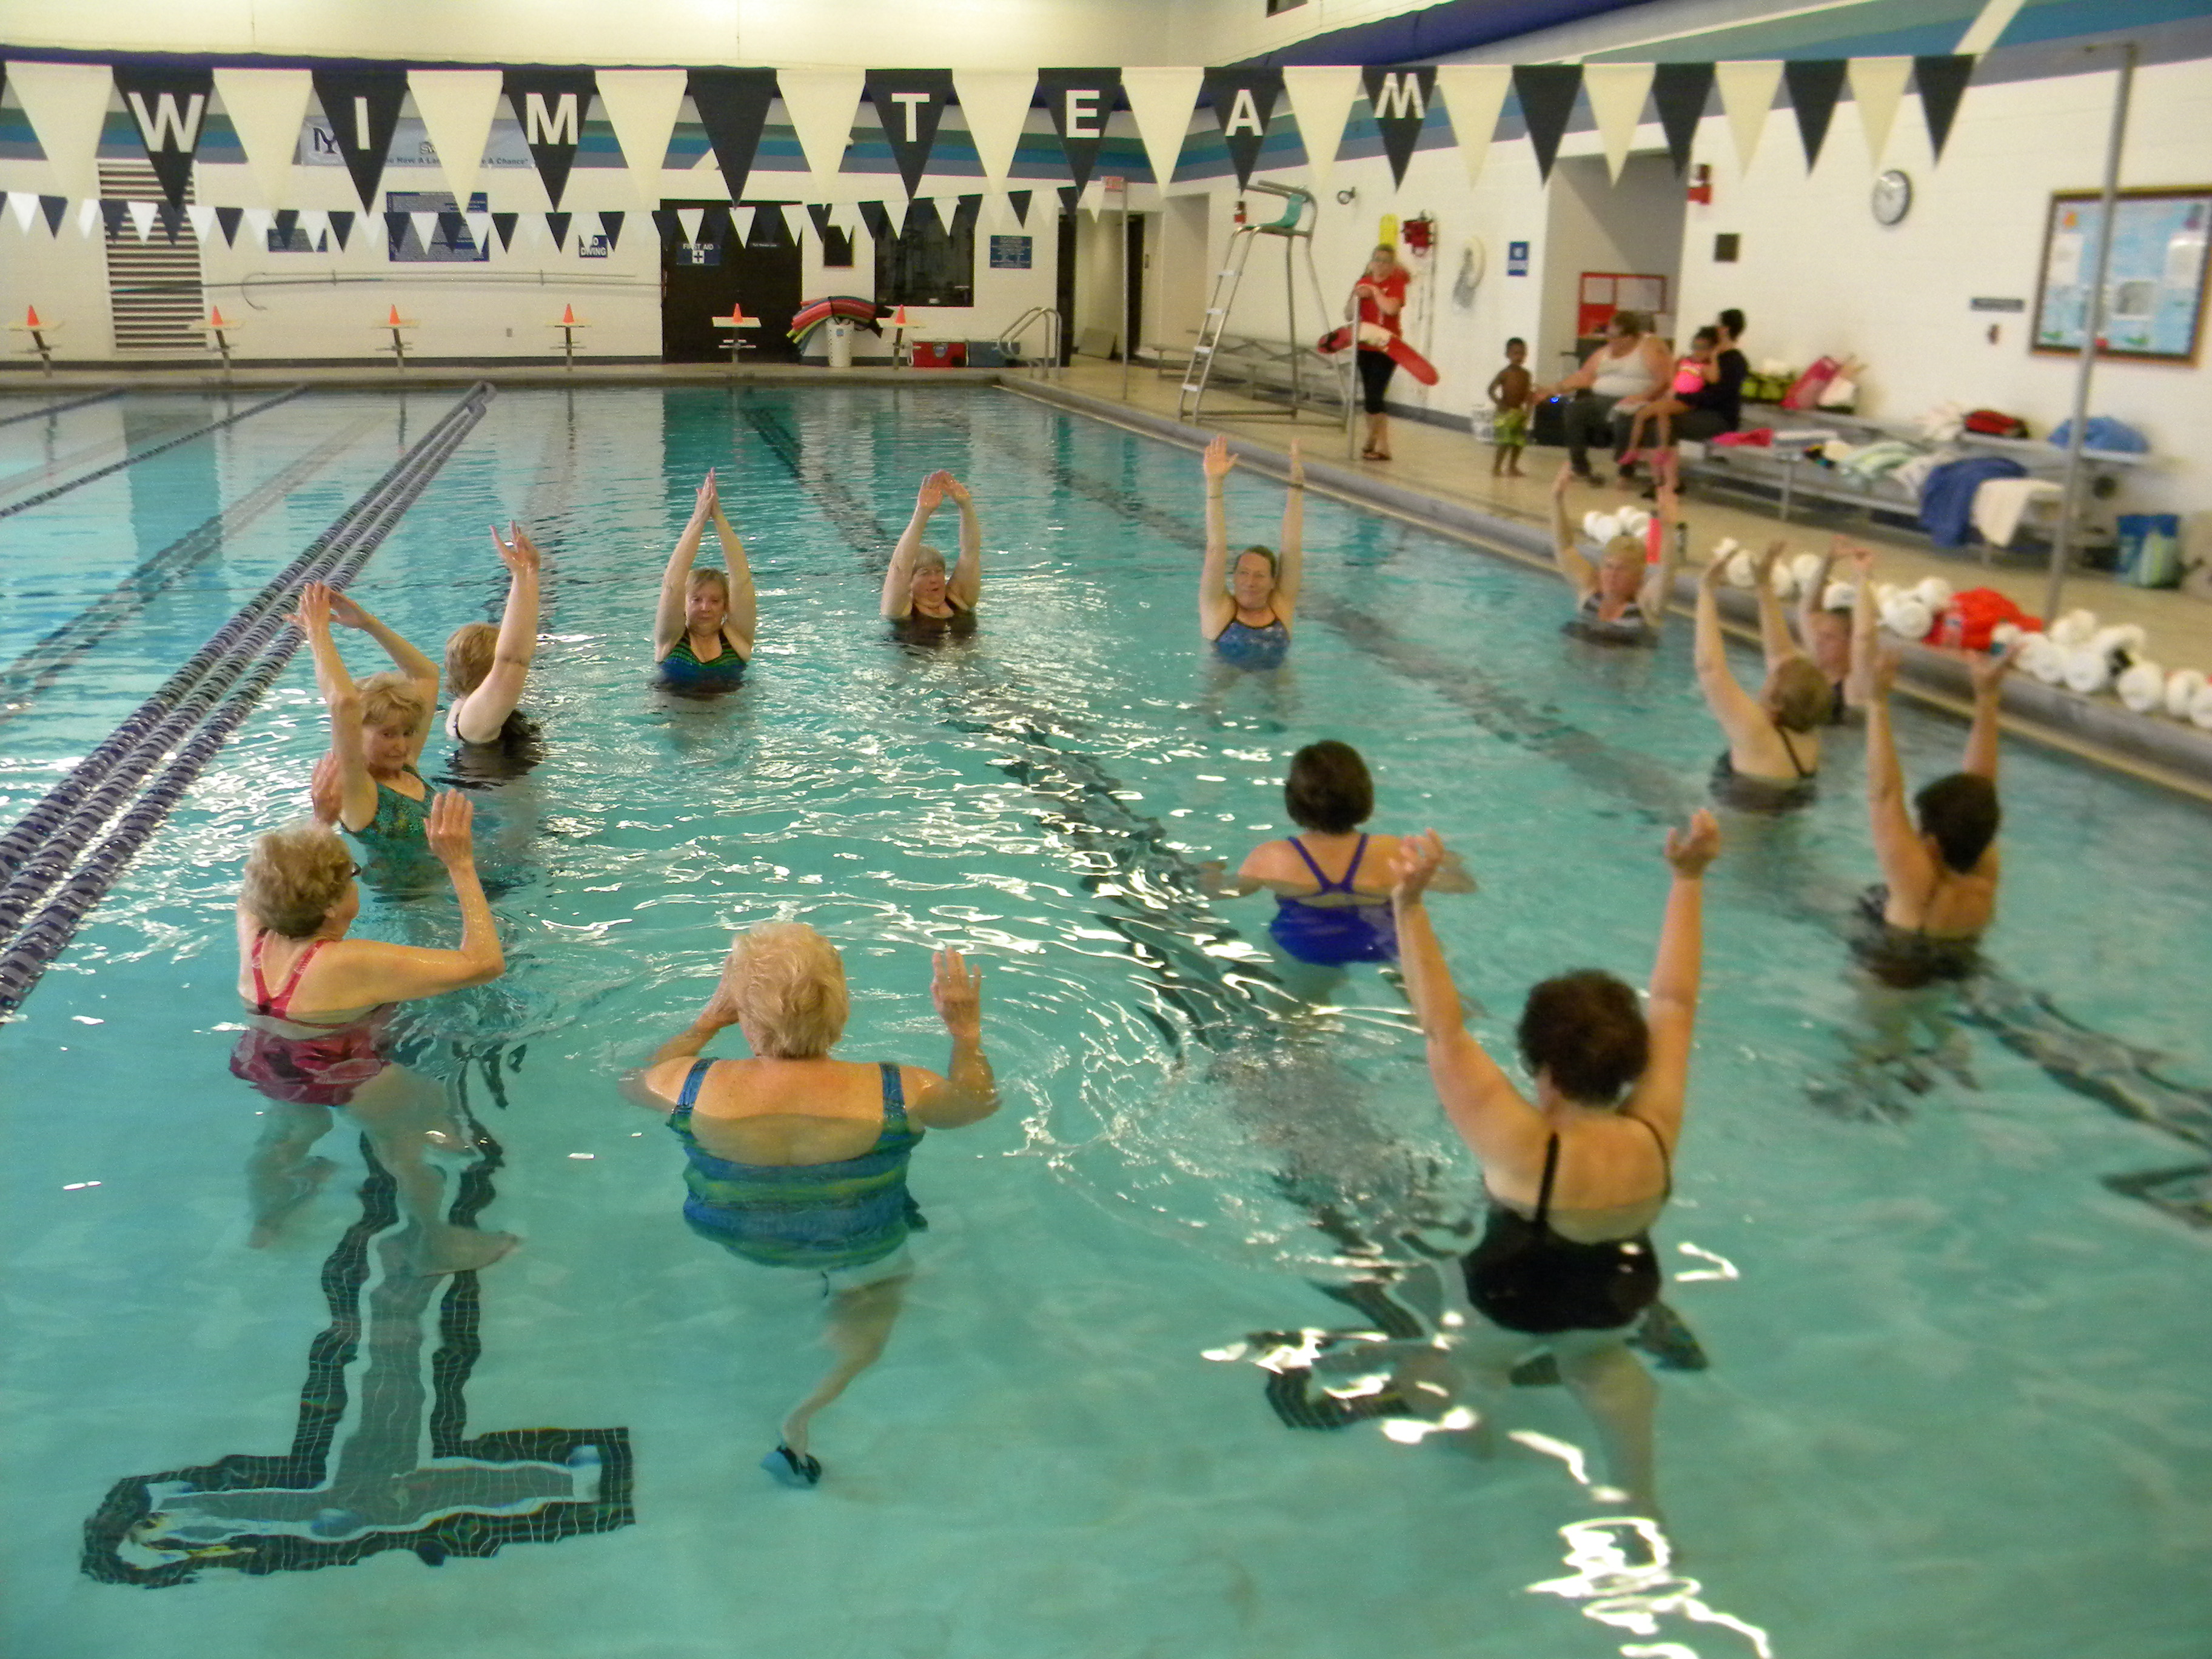 Swimming Pool / Aquatics Center in Meriden, CT Connecticut ...